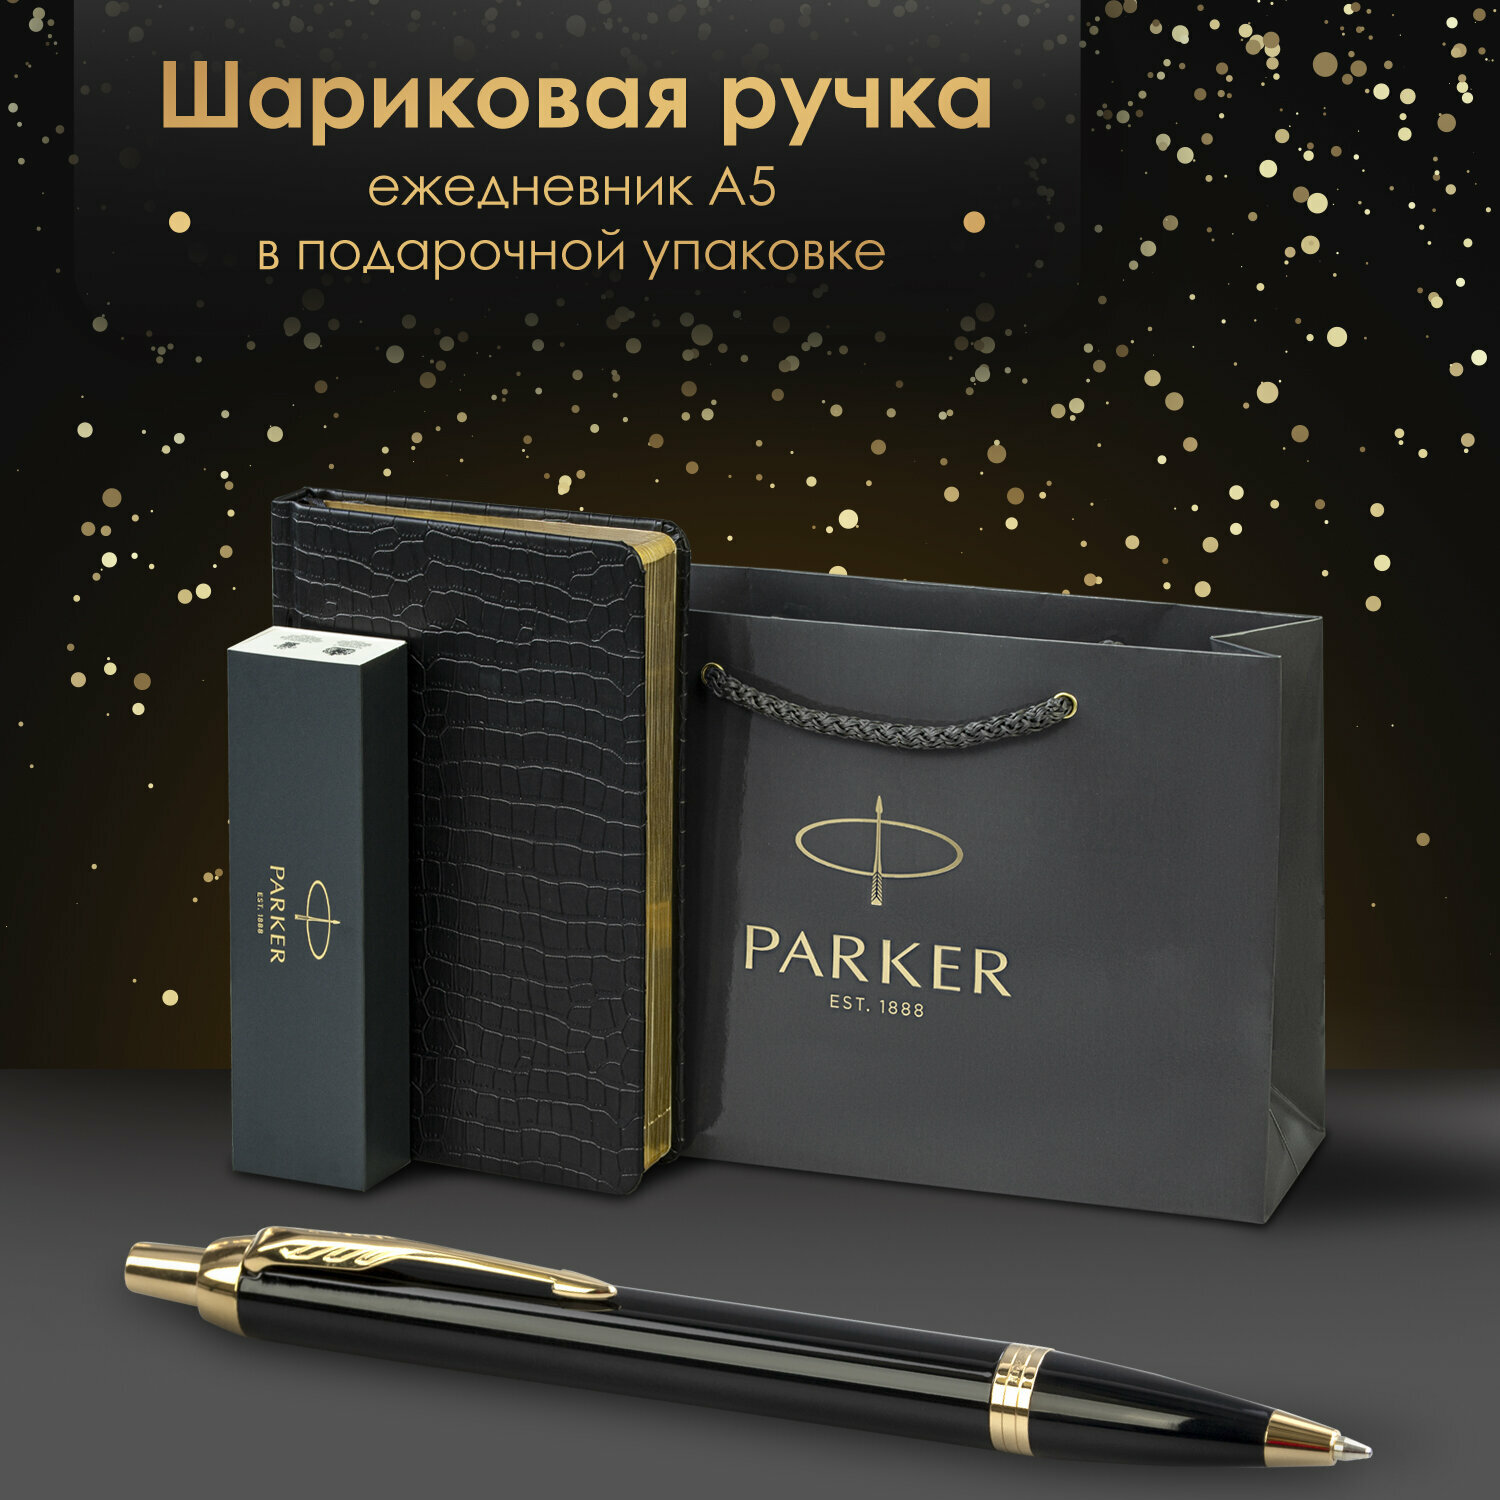 Ручка шариковая подарочная Parker IM Core K321 в комплекте ежедневник А5 черный, фирменный пакет Parker, набор в подарок, 880899